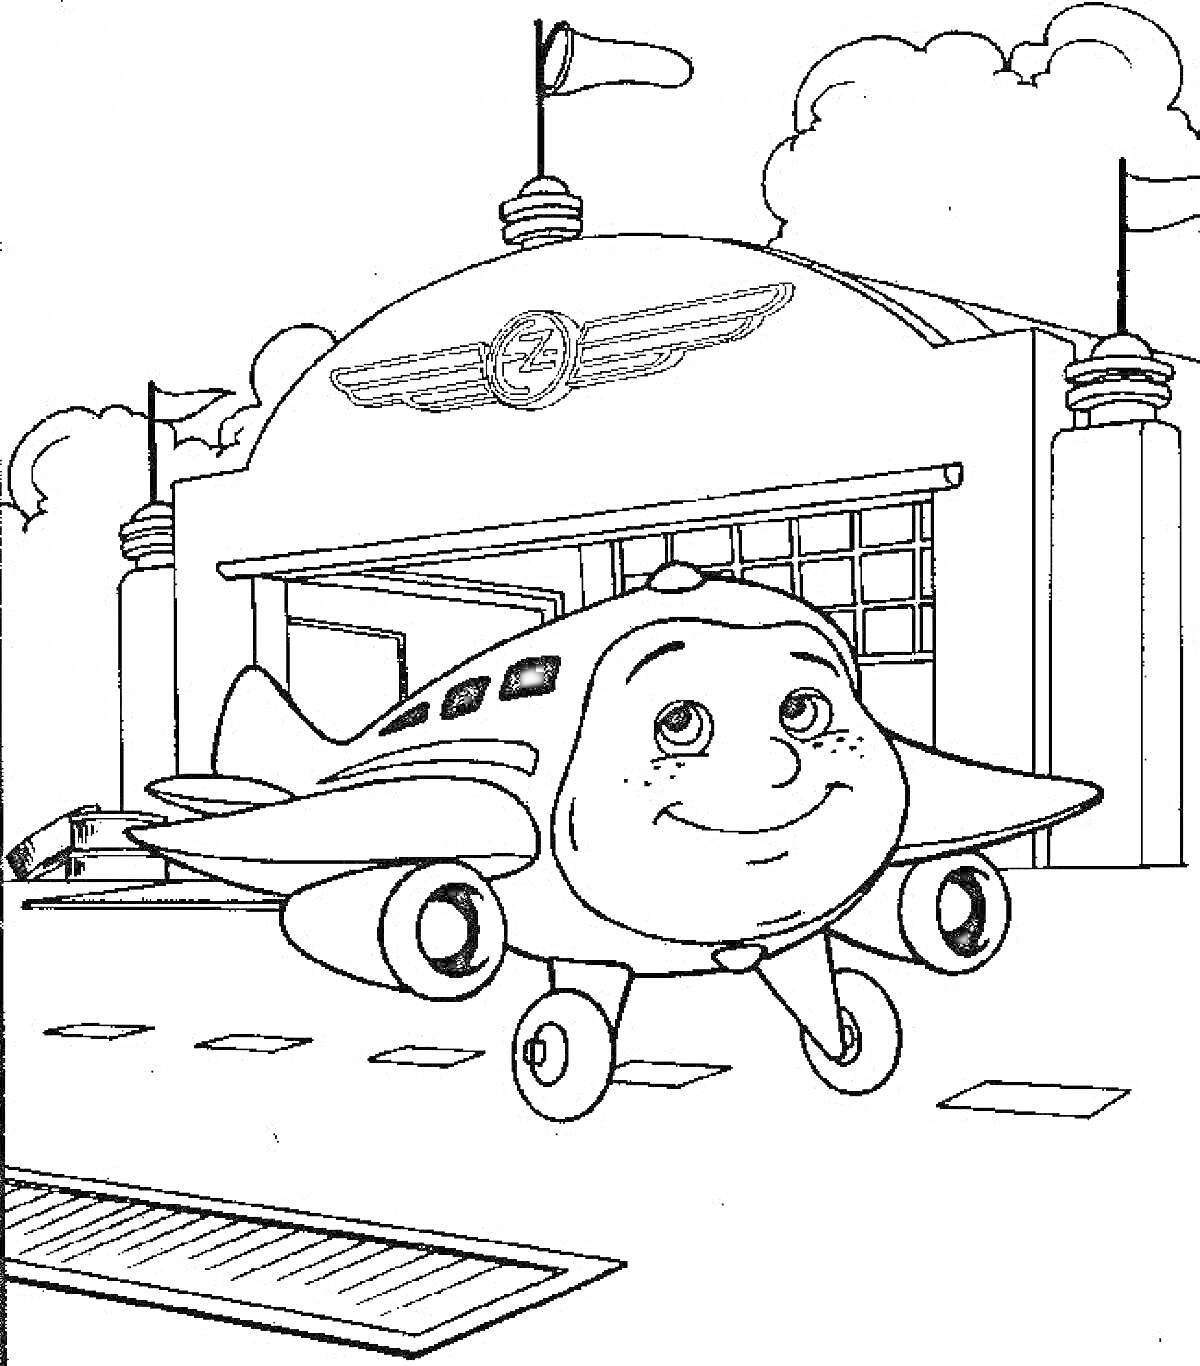 Раскраска Самолет перед ангаром в аэропорту (самолет с улыбающимся лицом, ангар с крыльями и эмблемой, флаг, облака)